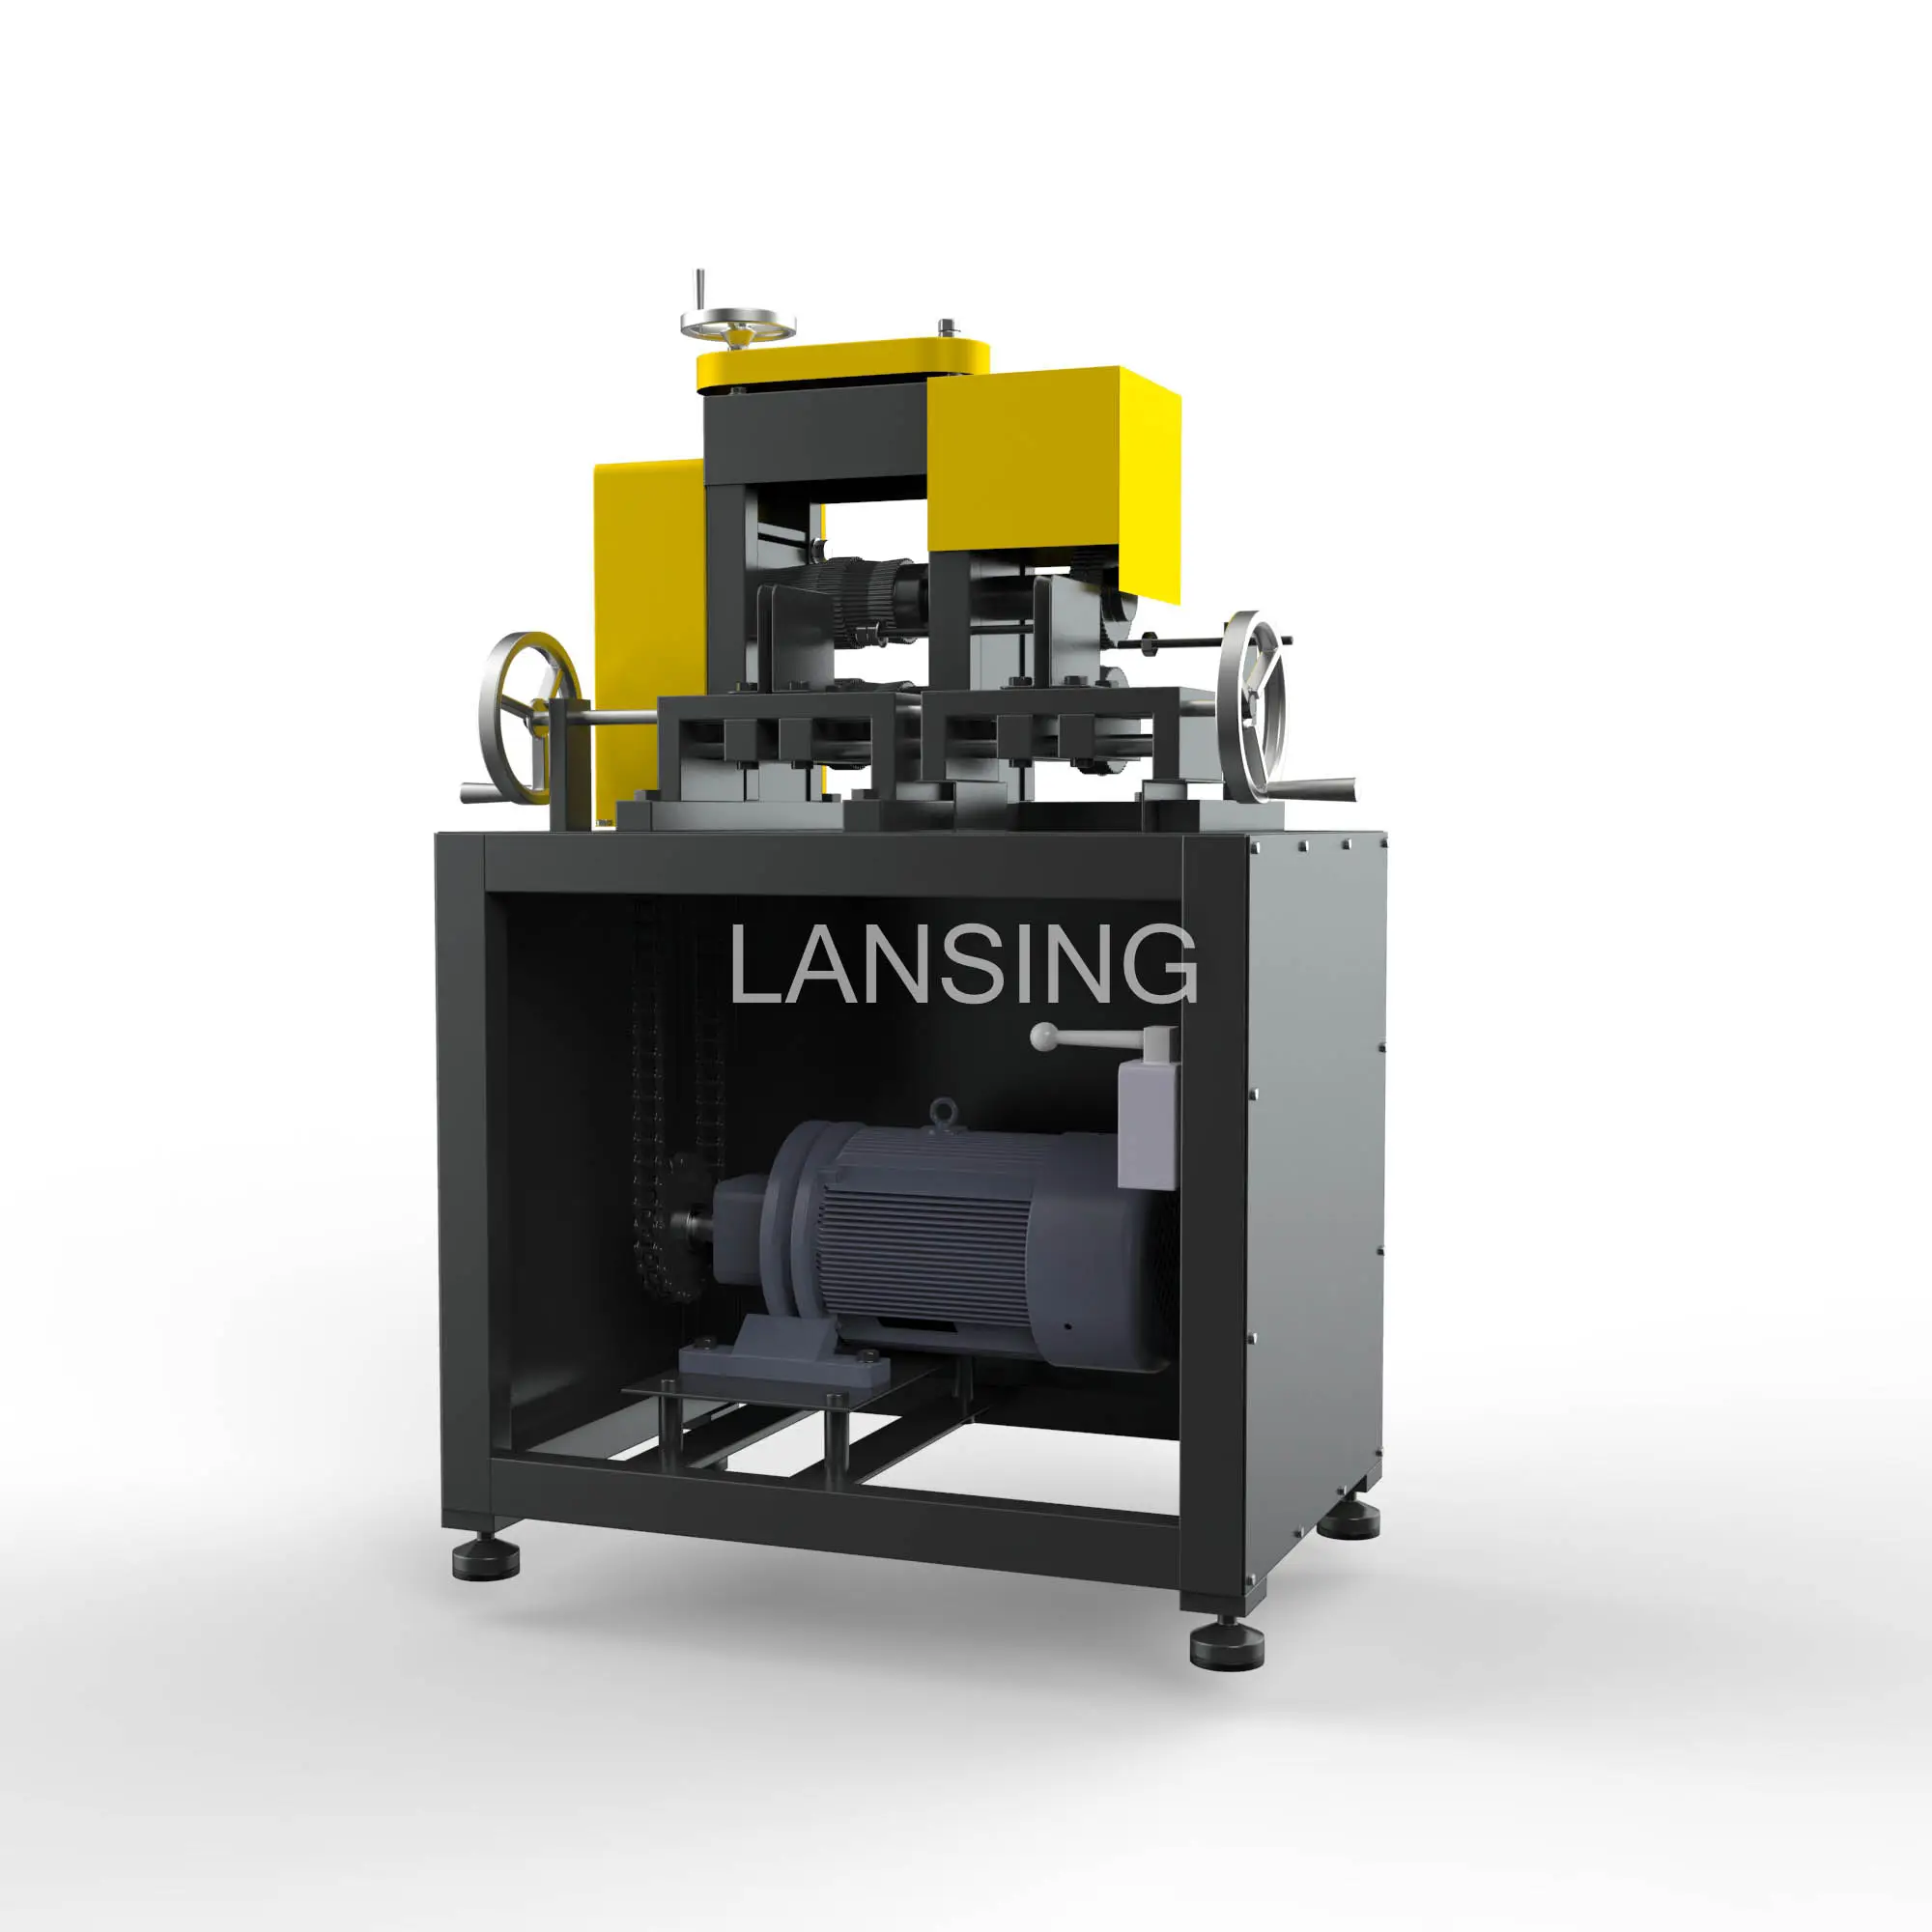 Lansing - Máquina de descascar cabos de cobre para reciclagem de sucata, granulador de cobre, descascador de cabos de cobre, com melhor classificação